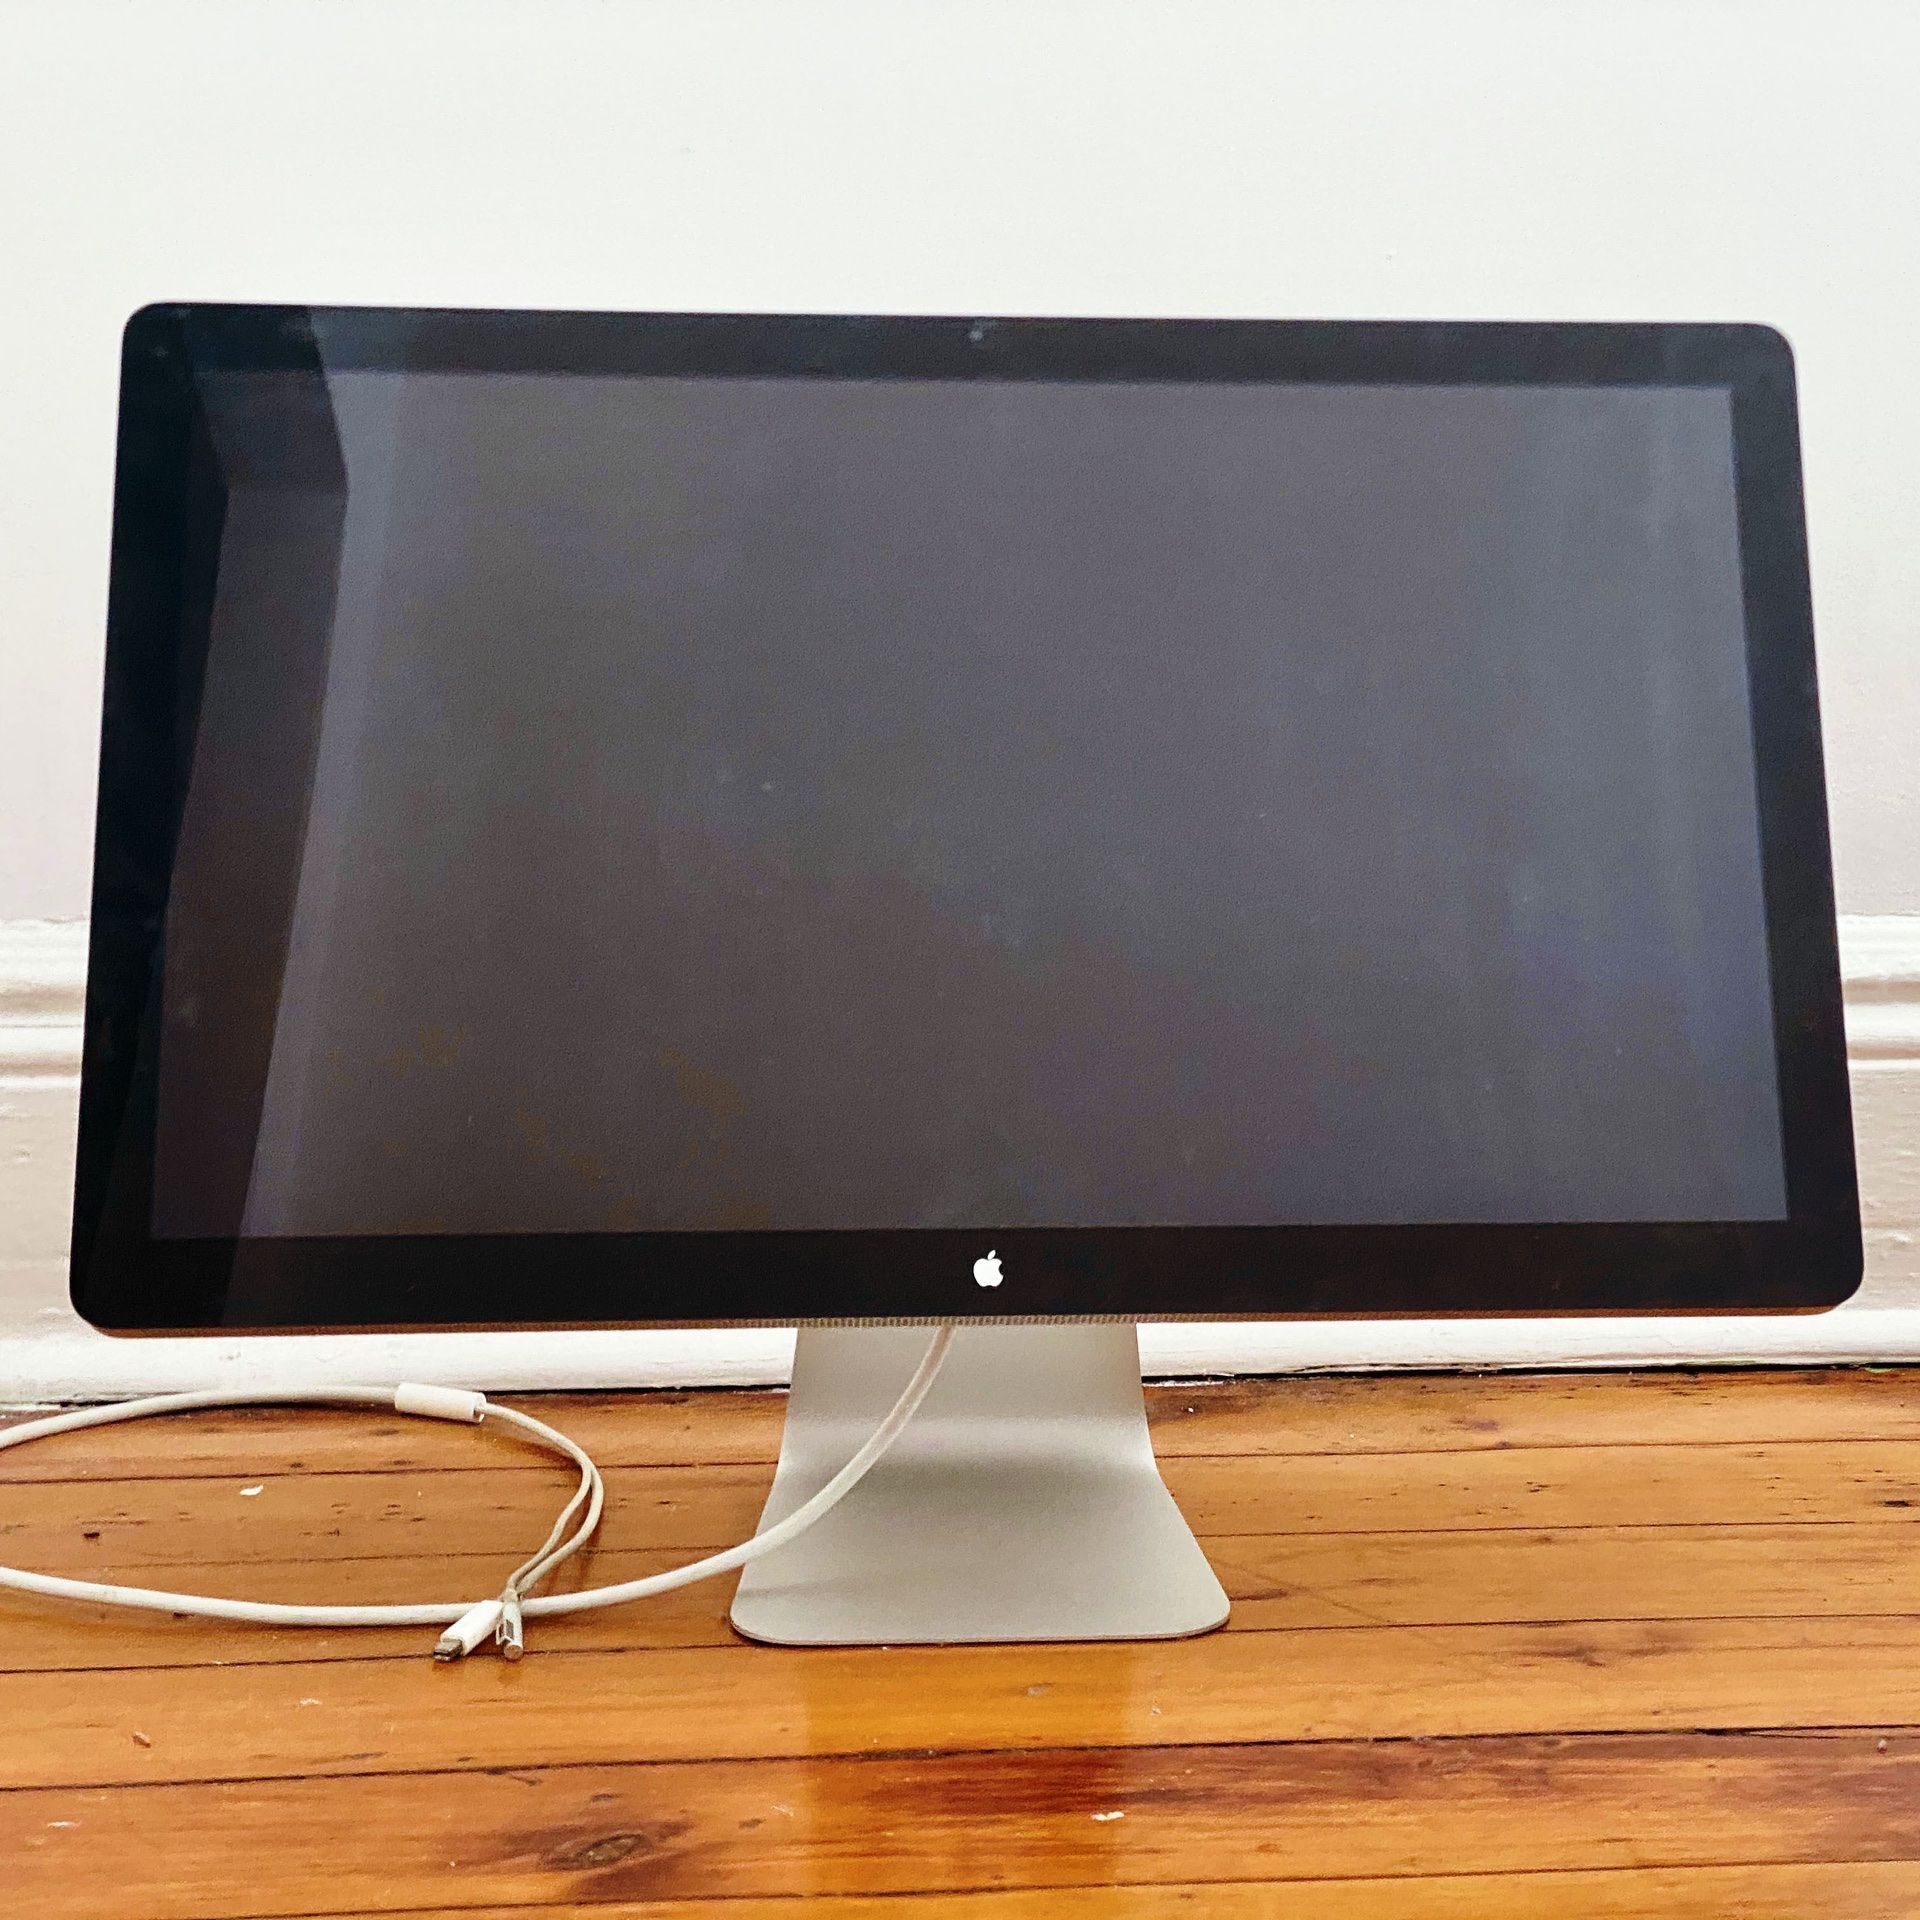 Apple 27” Thunderbolt Display a1407 (used, please read)